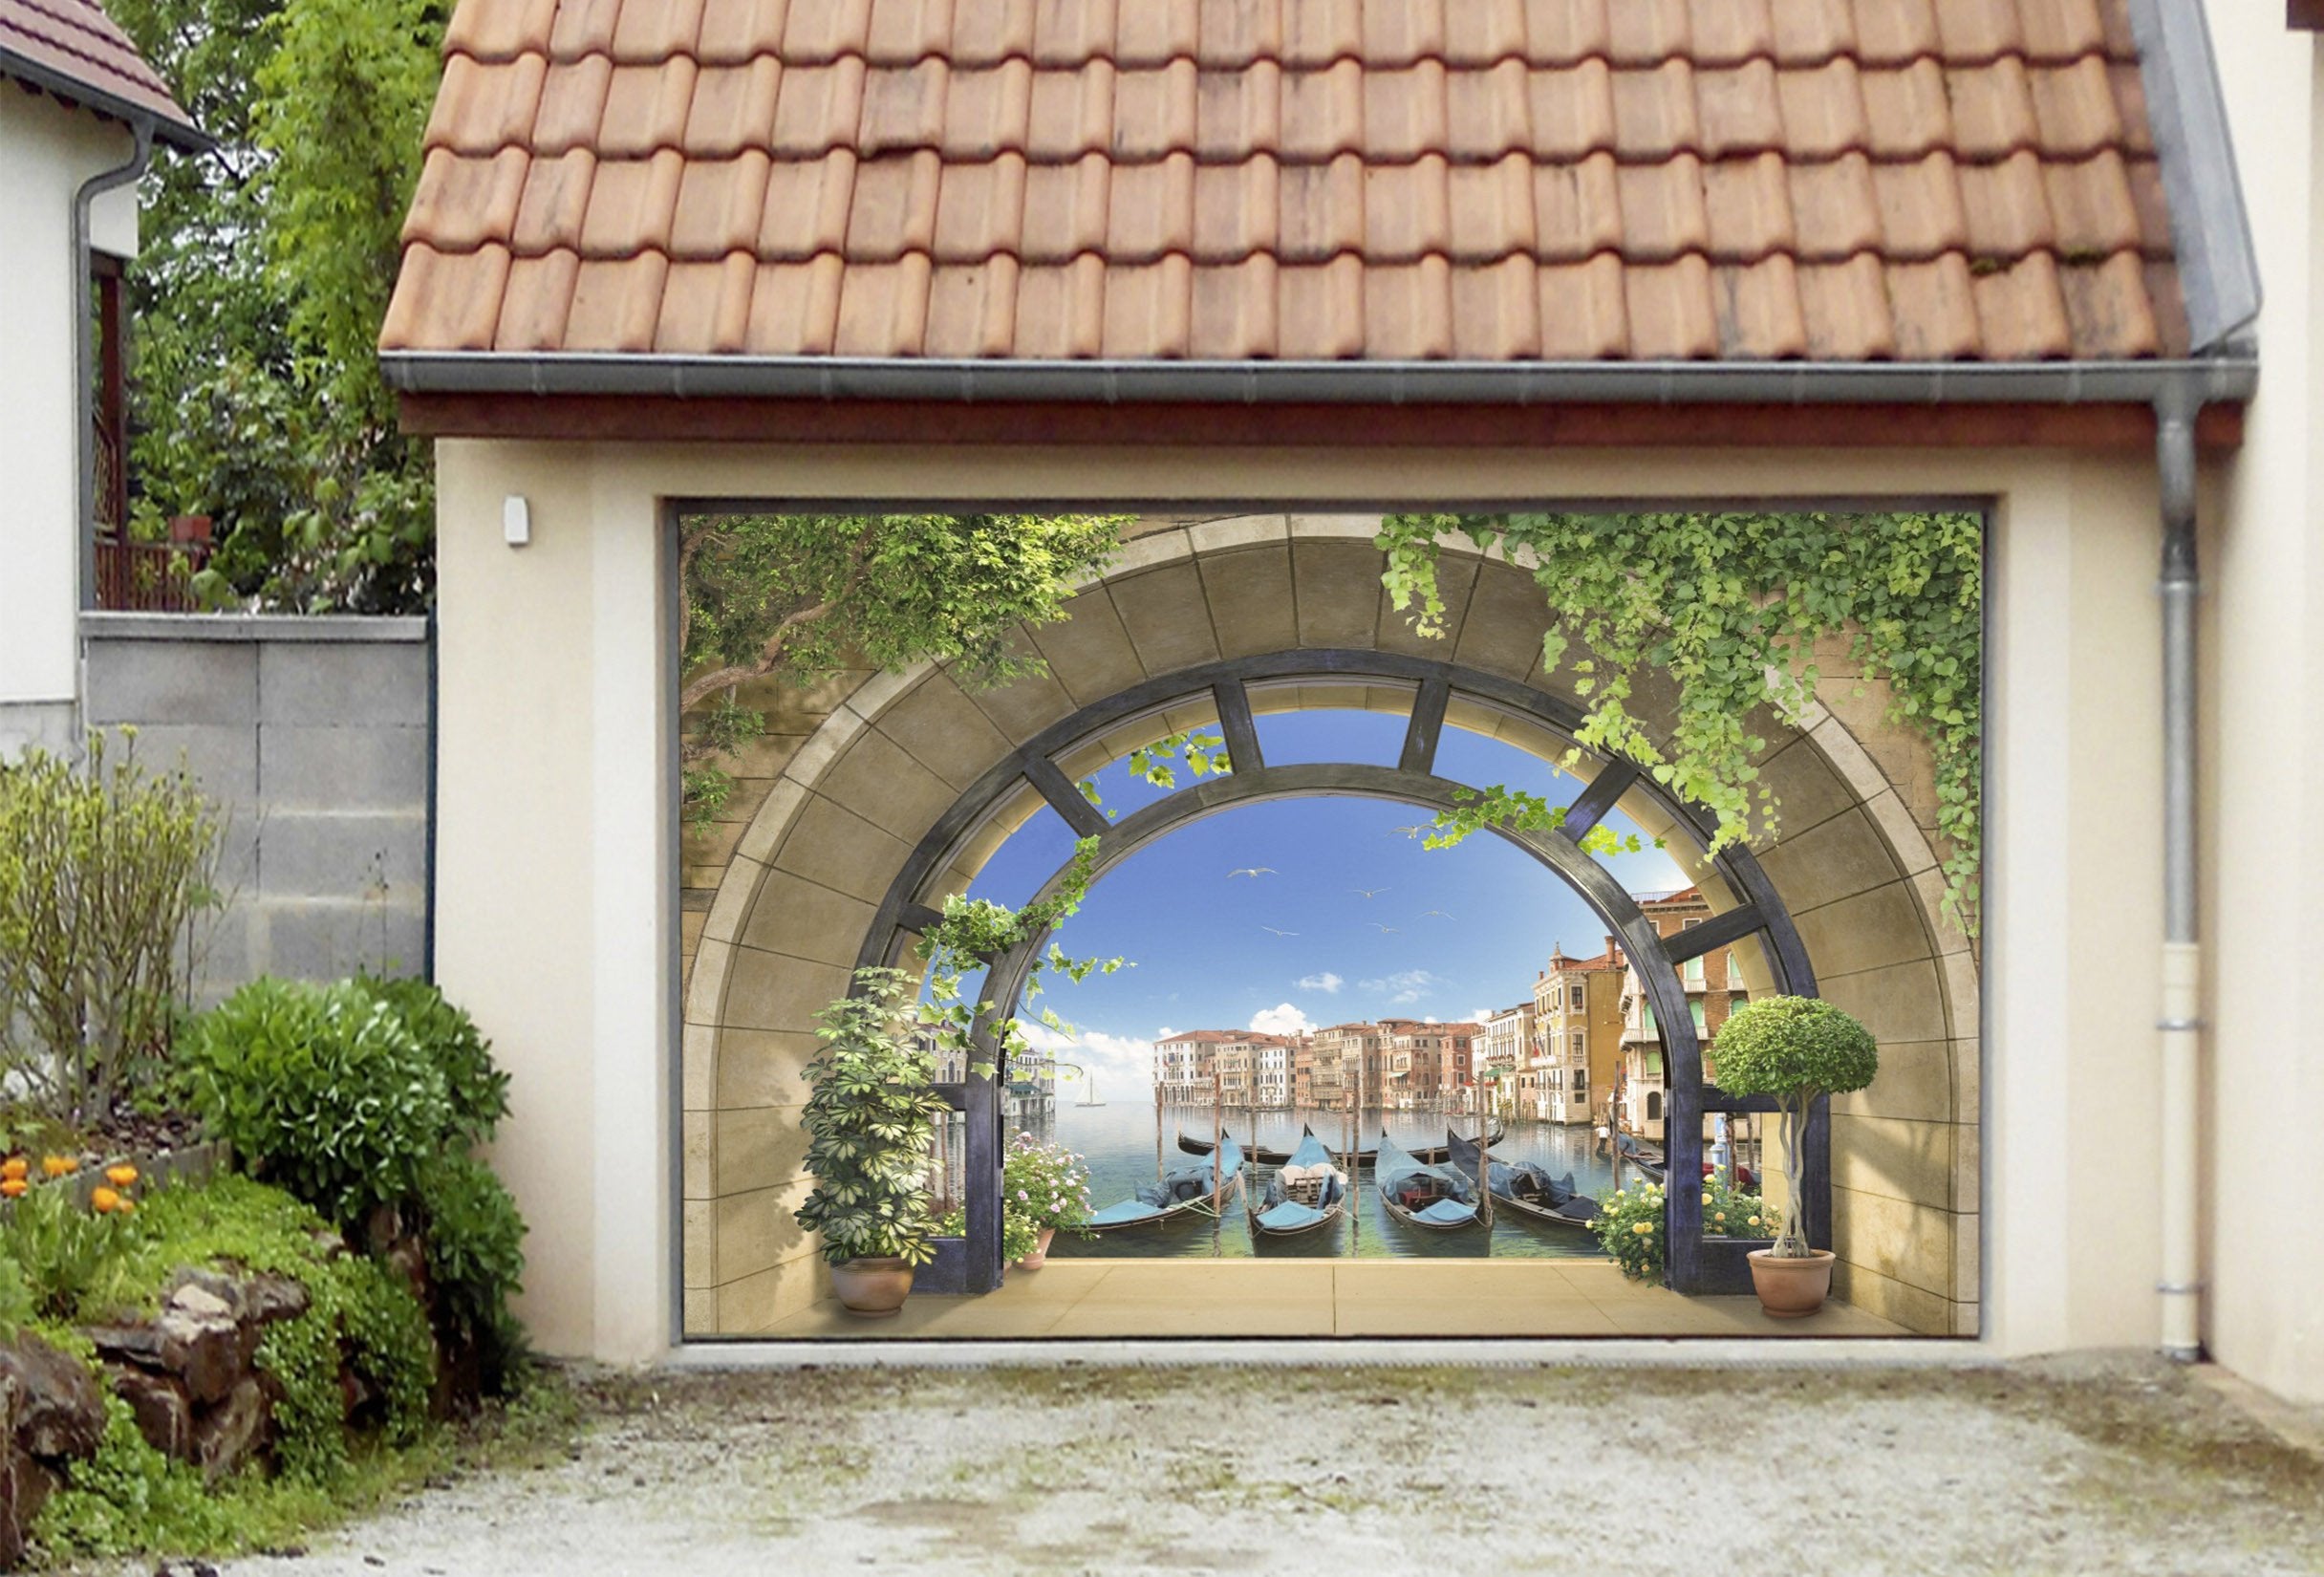 3D Arches Venice Scenery 307 Garage Door Mural Wallpaper AJ Wallpaper 